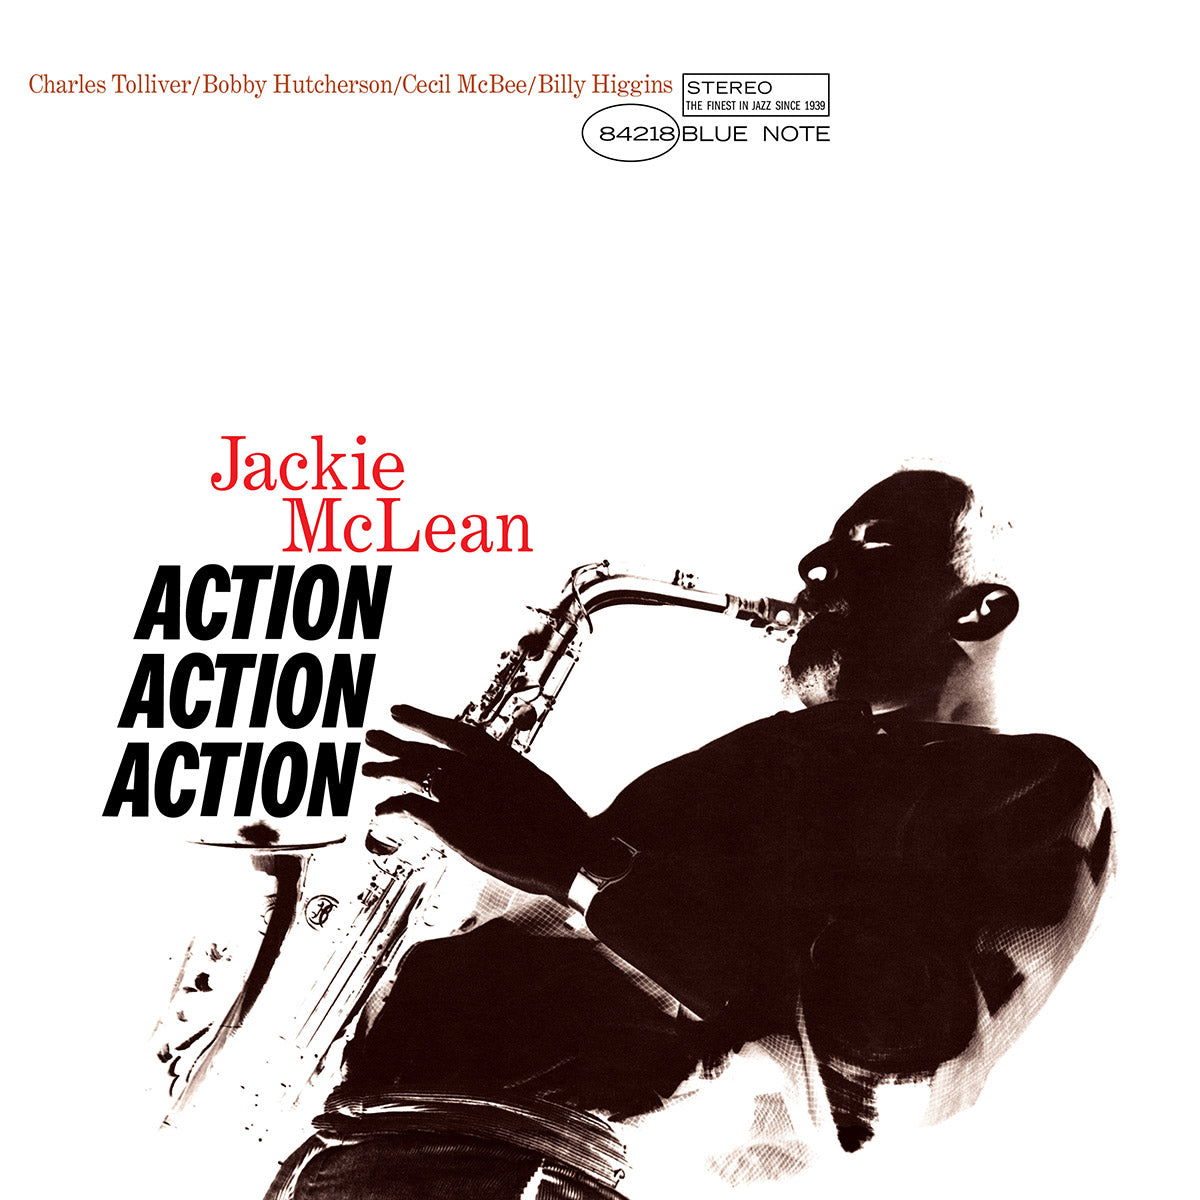 McLean, Jackie "Action" [Blue Note Tone Poet Series]